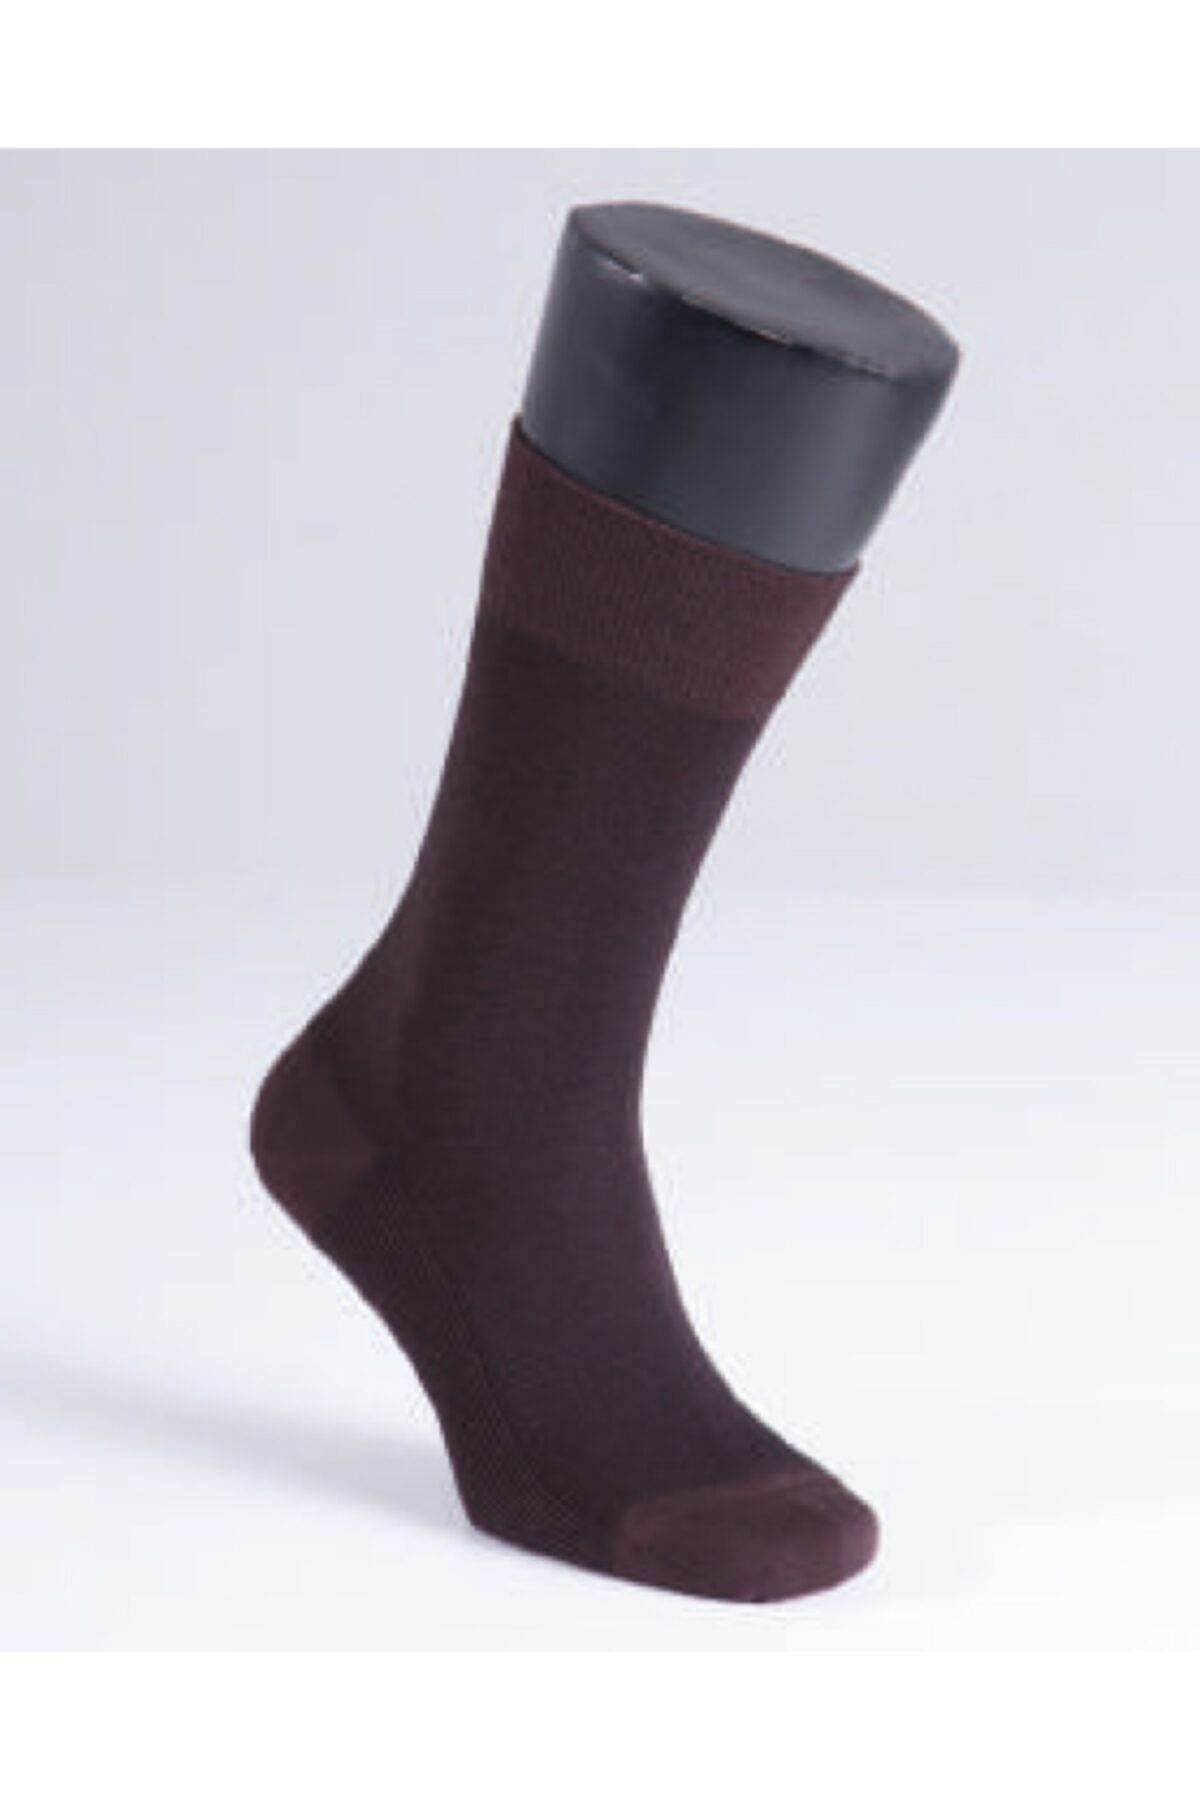 Blackspade Erkek Çorap 9911 - Kahverengi